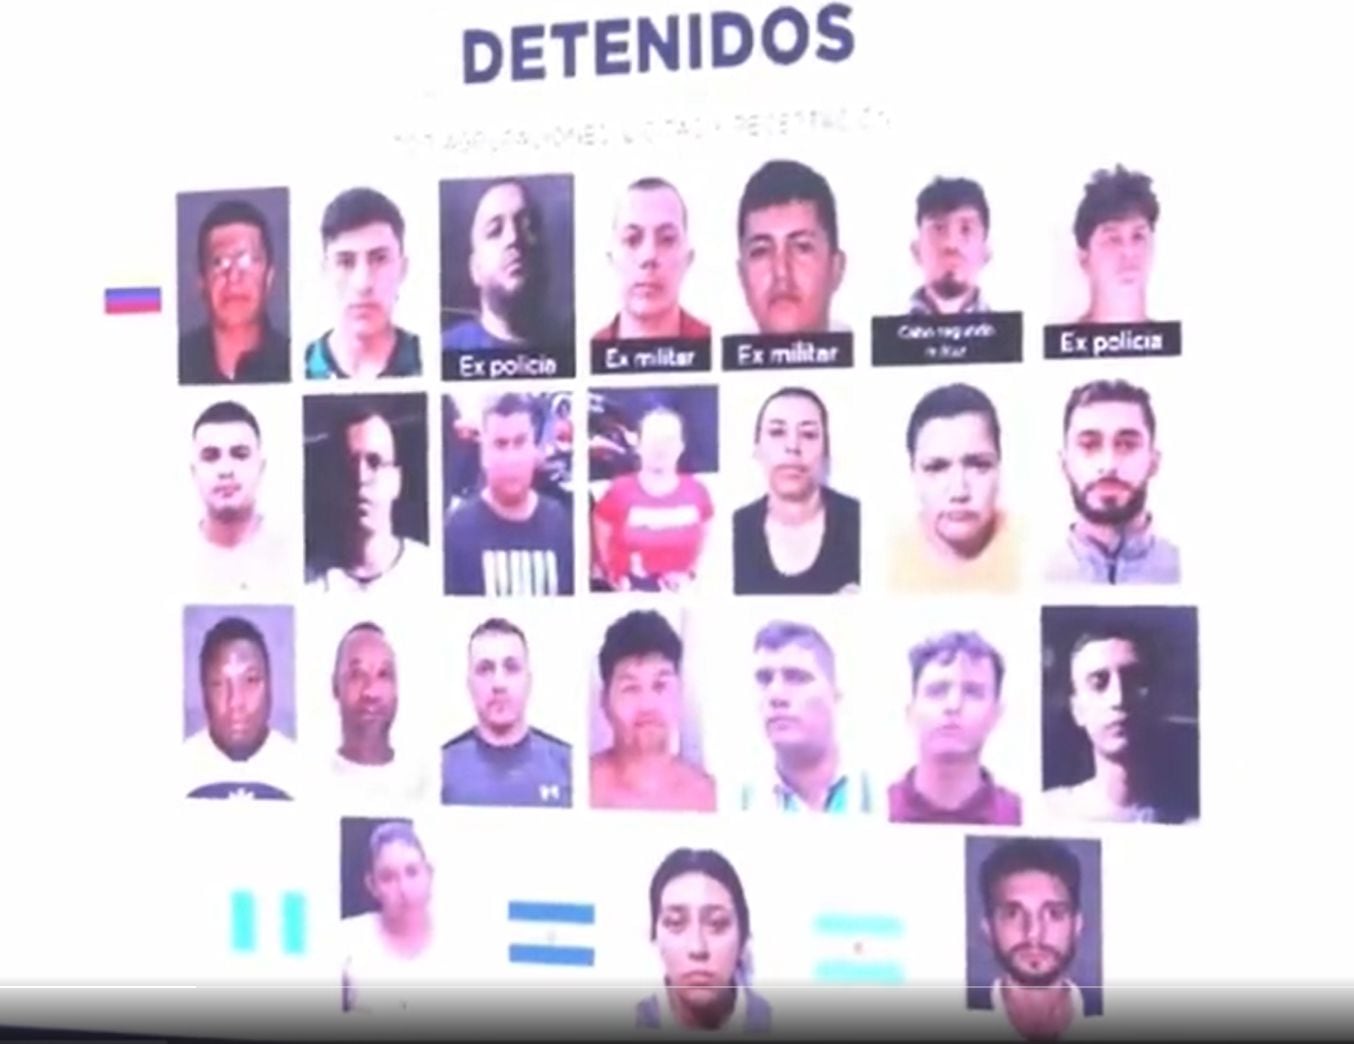 Los detenidos eran prestamistas gota a gota que operaban ilegalmente en El Salvador.